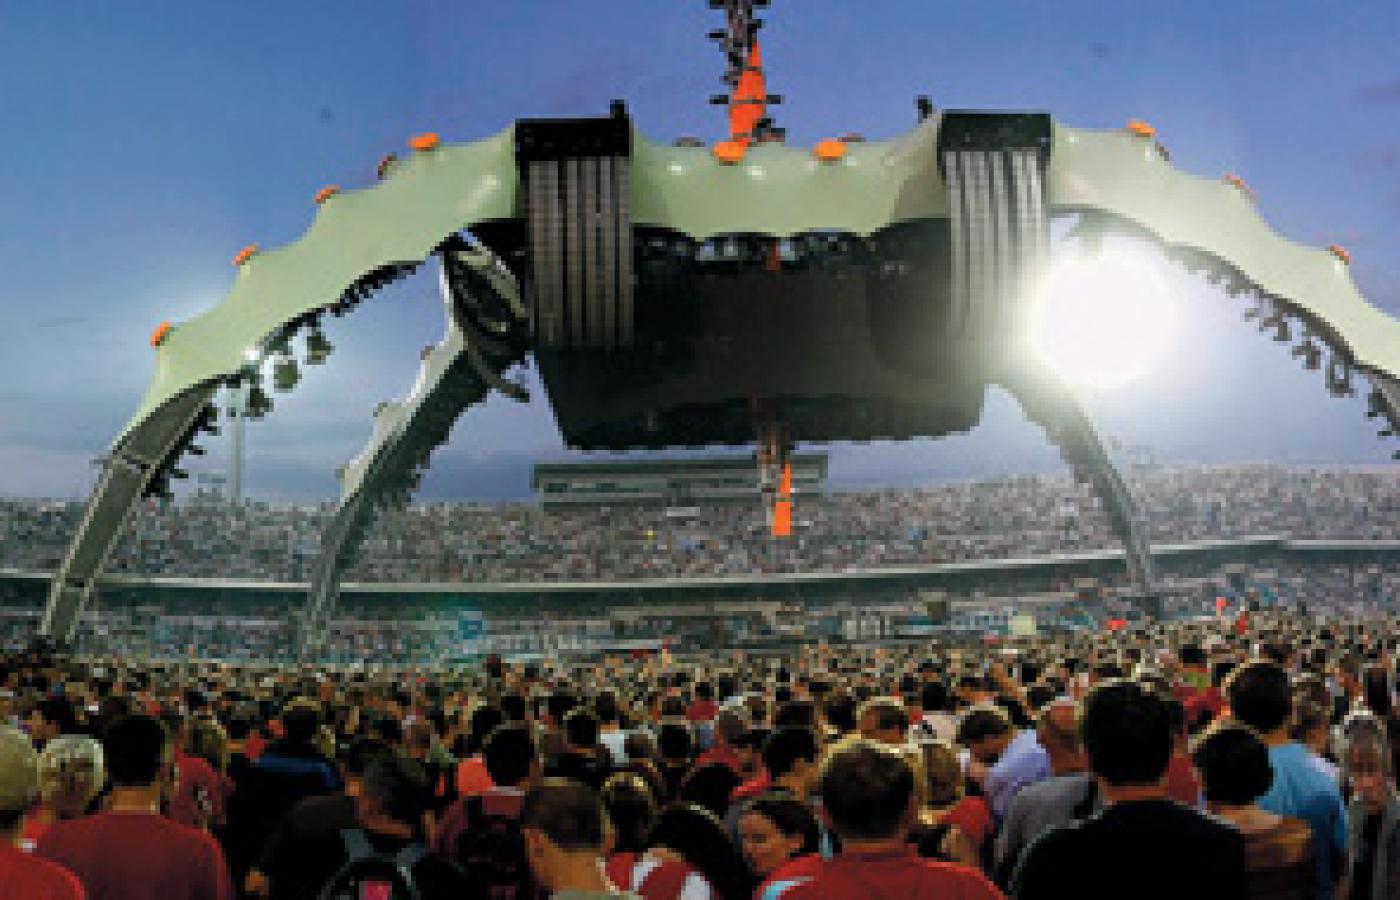 Scena w kształcie pająka na chorzowskim koncercie U2. Fot Grzegorz Celejewski / Agencja Gazeta